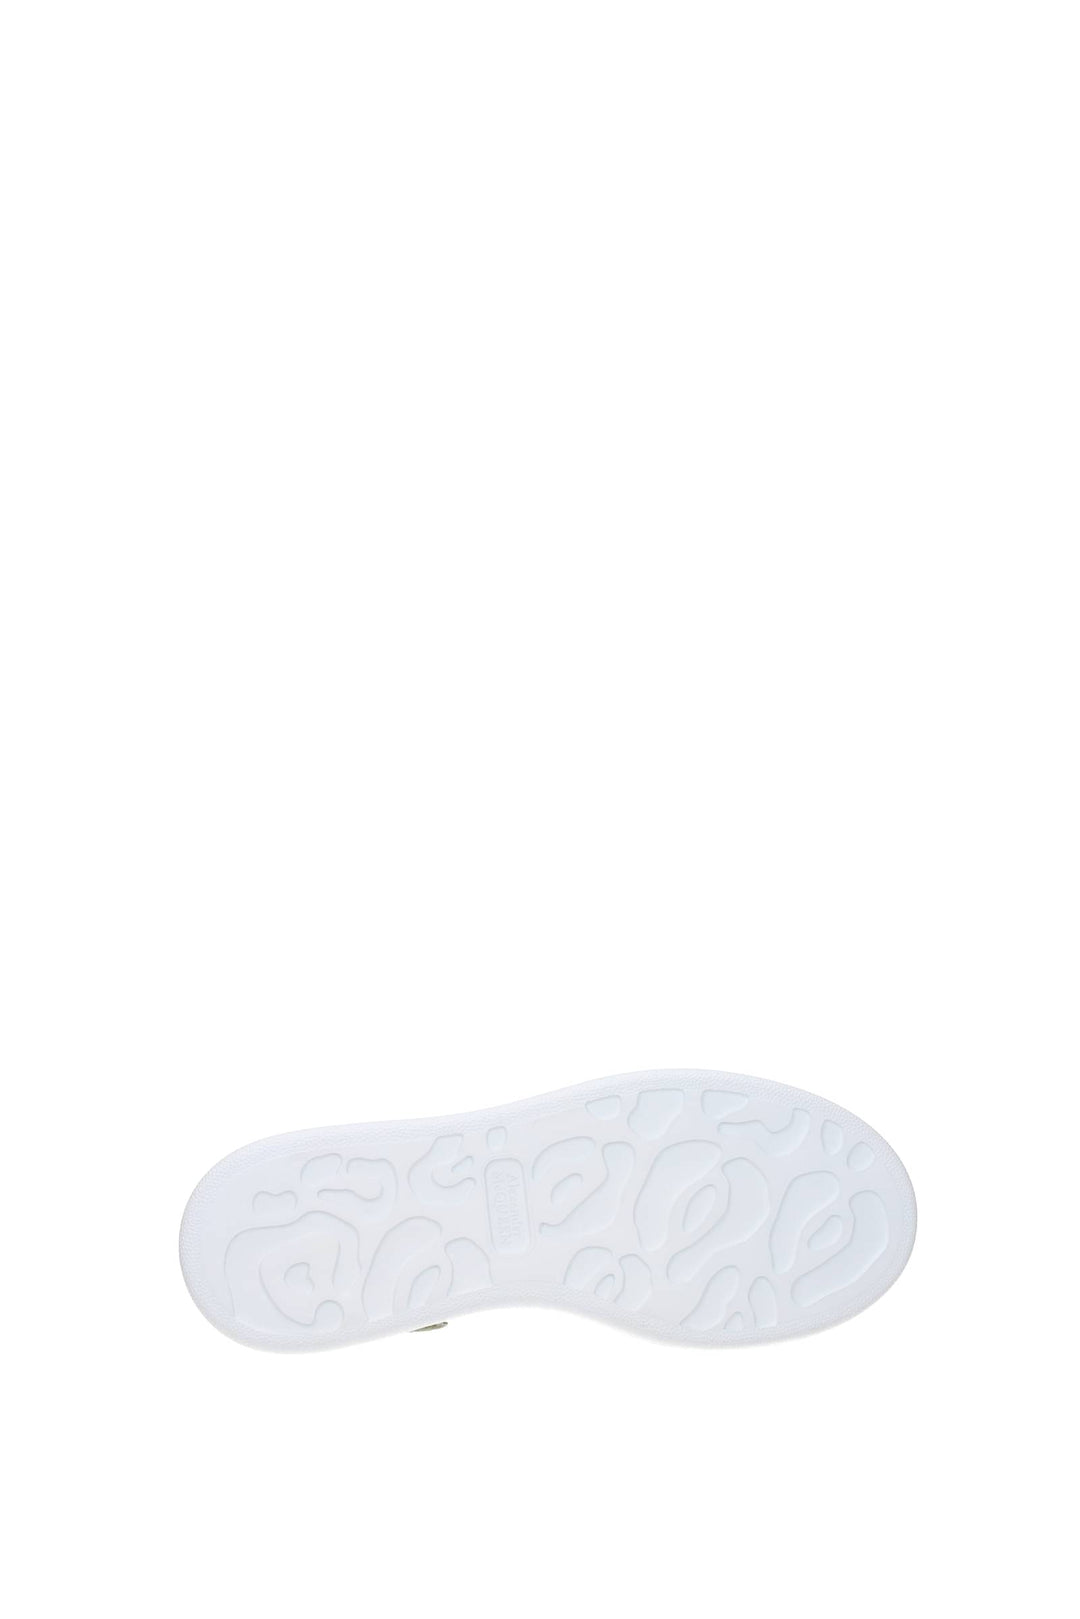 Sneakers Oversize Pelle Bianco Salvia - Alexander McQueen - Donna